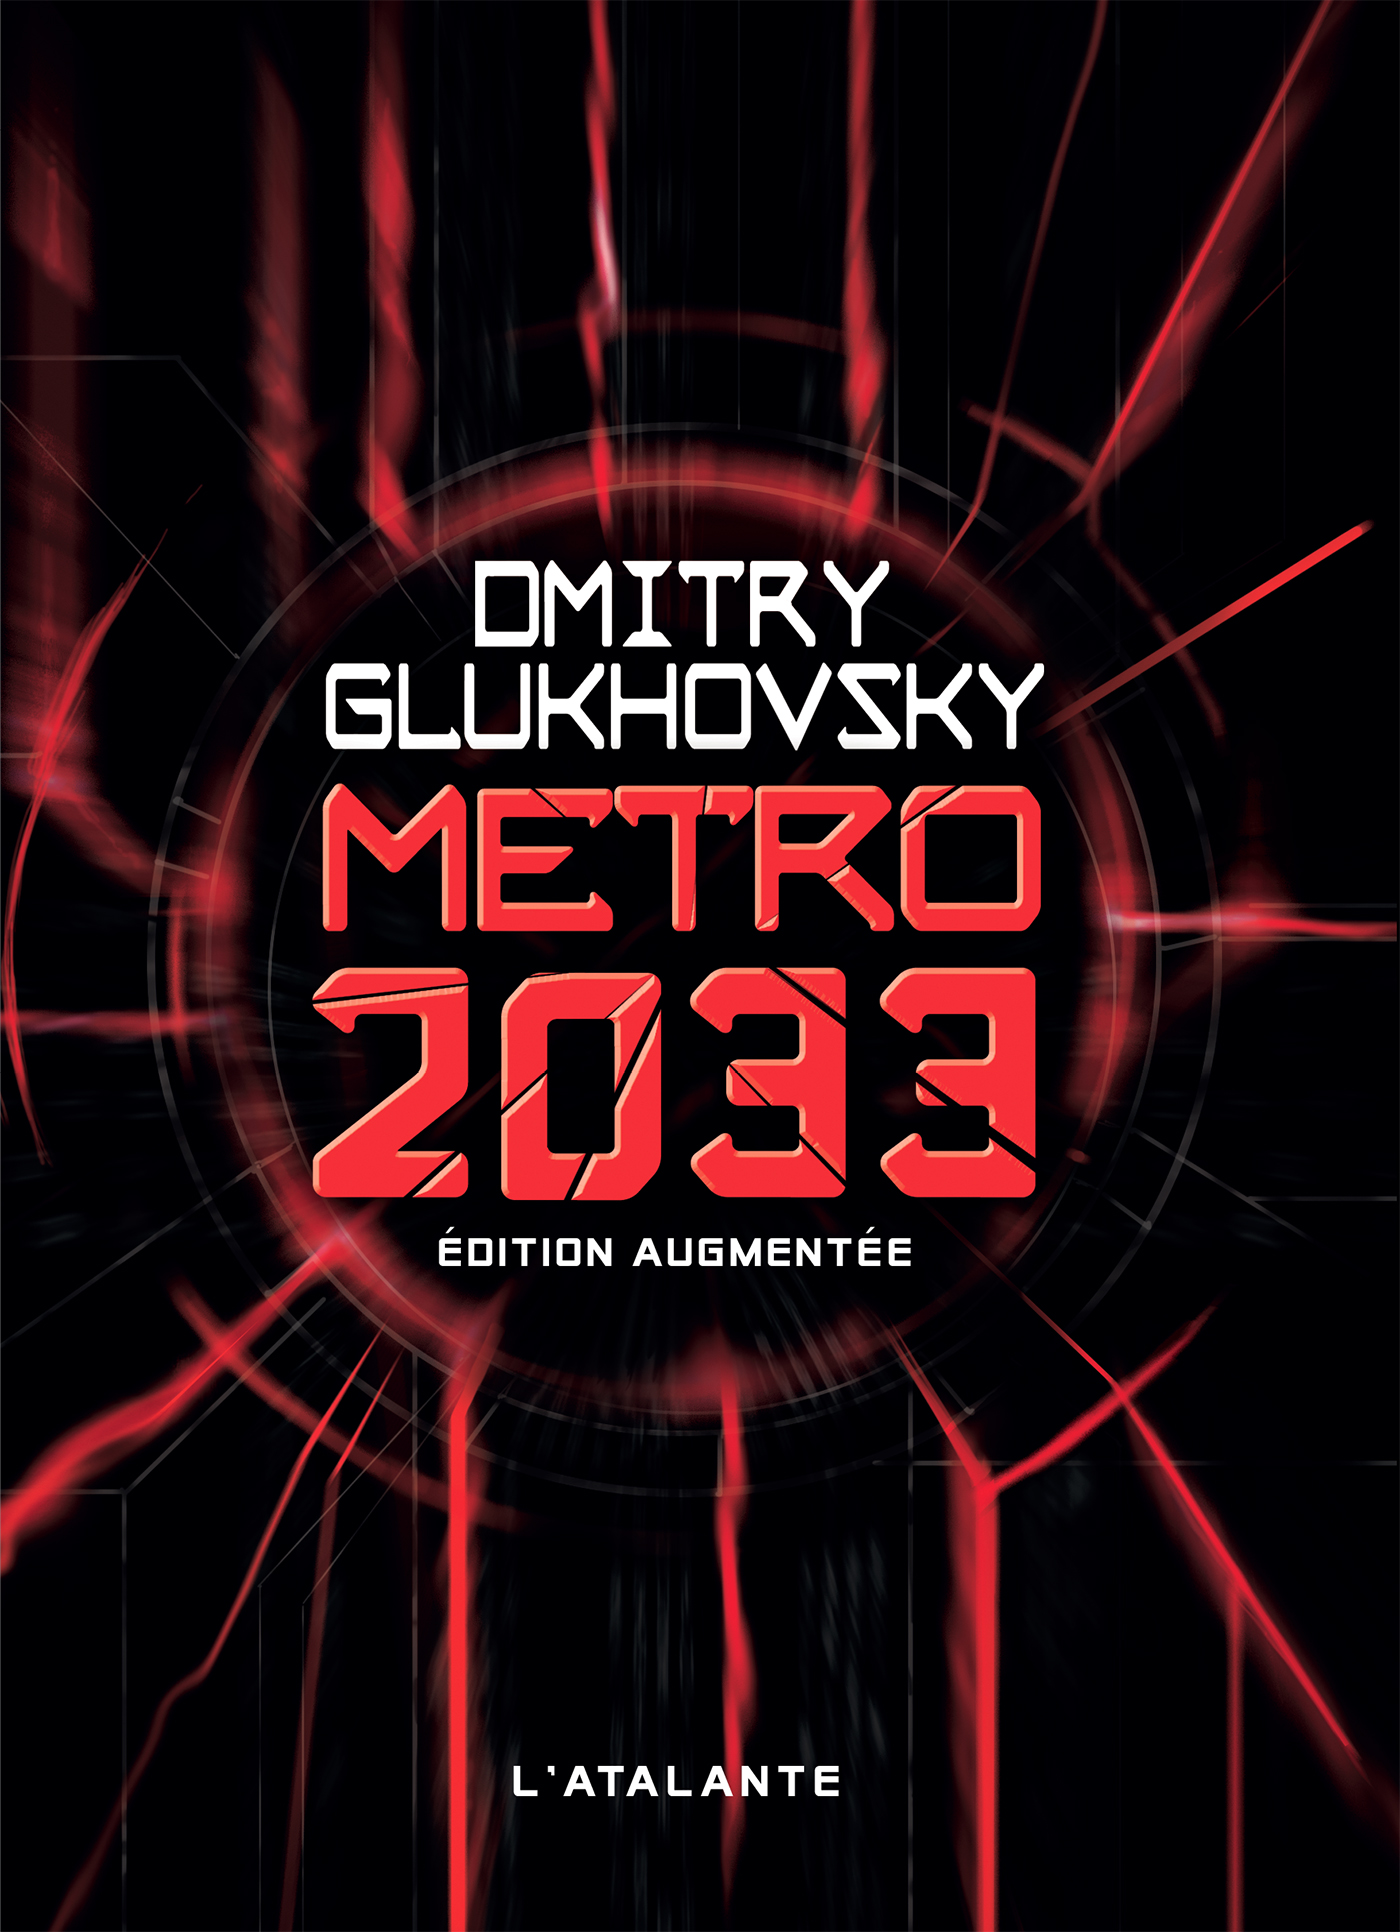 Afficher "Métro 2033 - Édition augmentée"